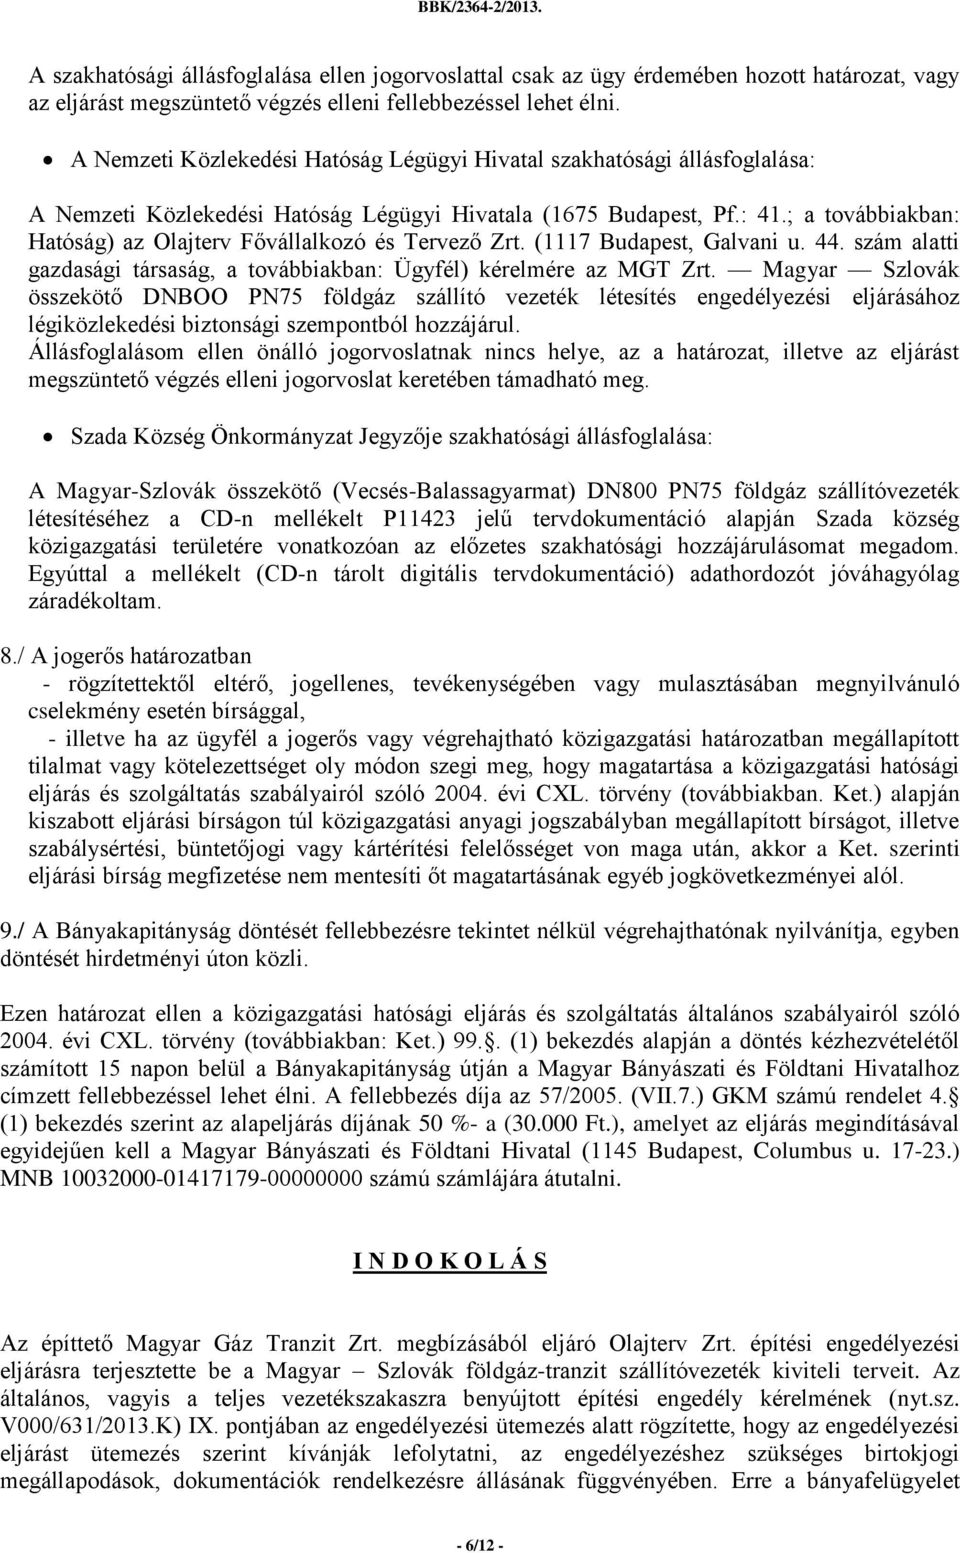 ; a továbbiakban: Hatóság) az Olajterv Fővállalkozó és Tervező Zrt. (1117 Budapest, Galvani u. 44. szám alatti gazdasági társaság, a továbbiakban: Ügyfél) kérelmére az MGT Zrt.